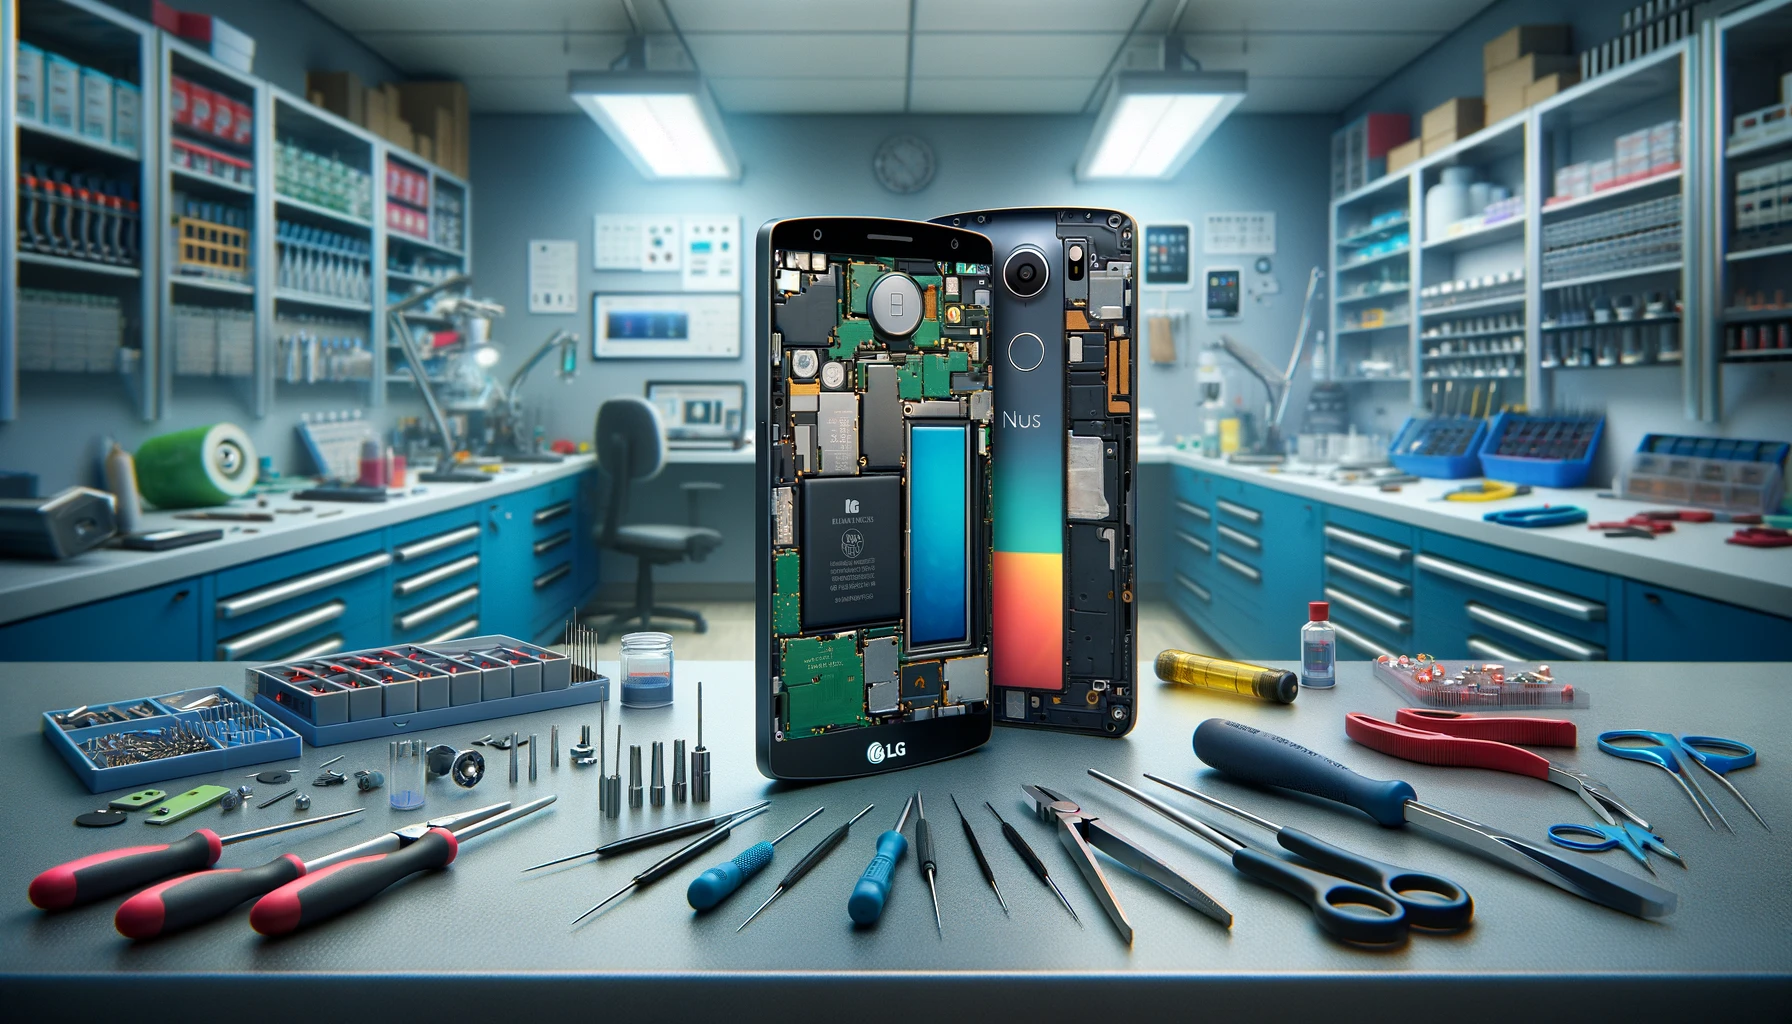 LG Nexus 5 Repair